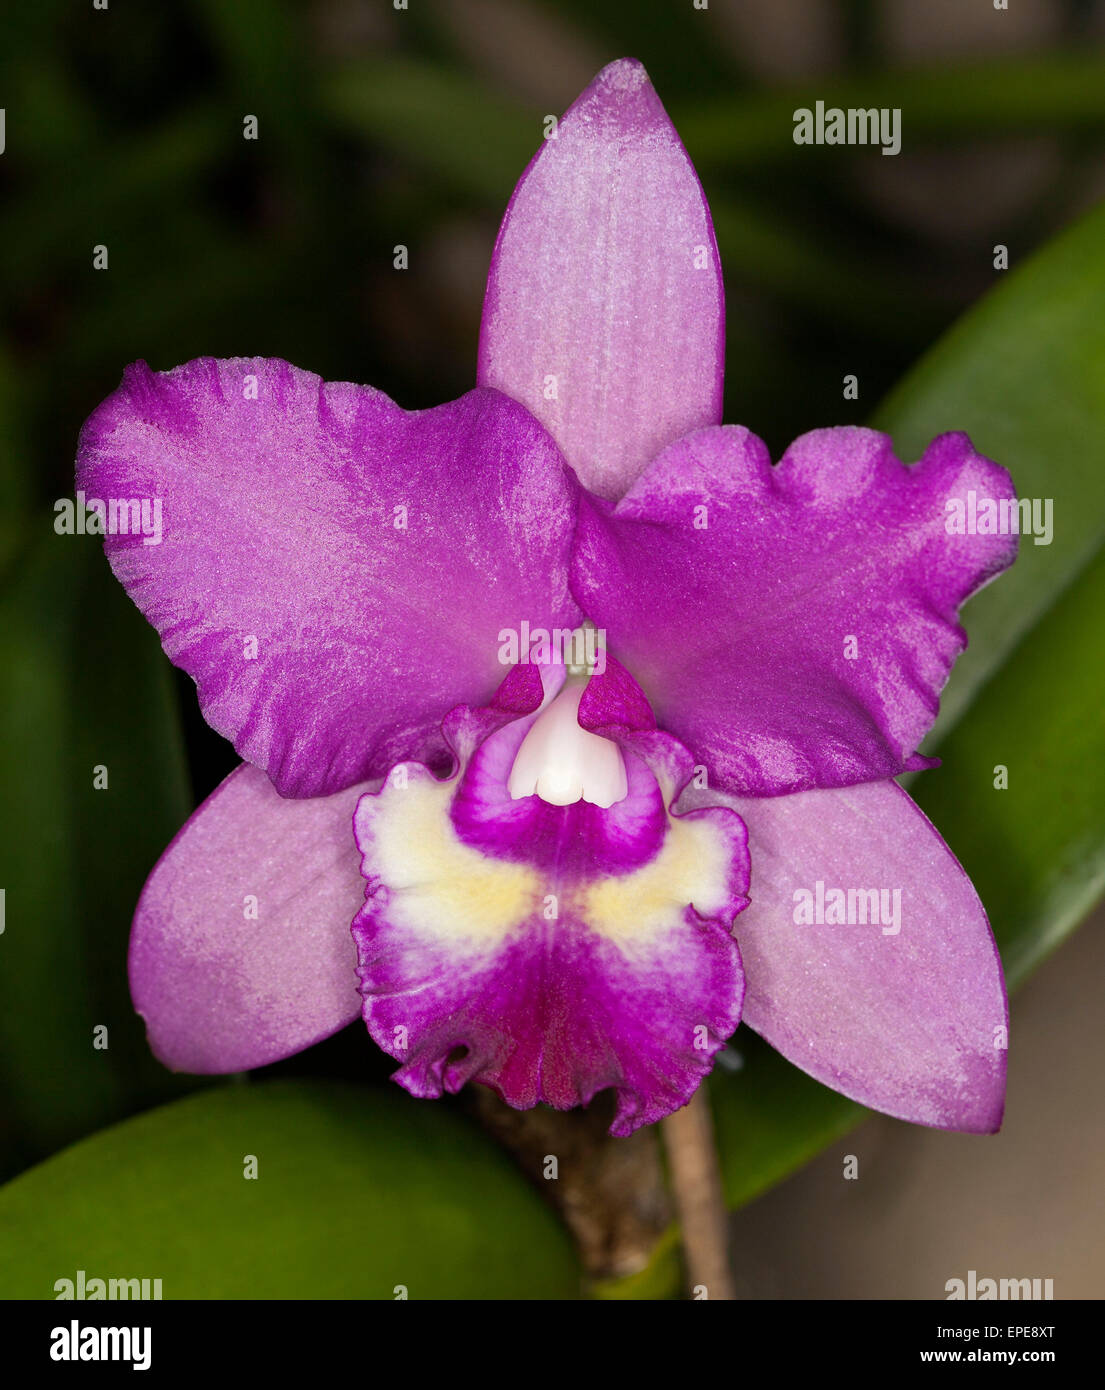 Spettacolare vividi fiori viola di Cattleya orchid cultivar Narooma x inganno goccia "Rame e spot' su sfondo verde scuro Foto Stock